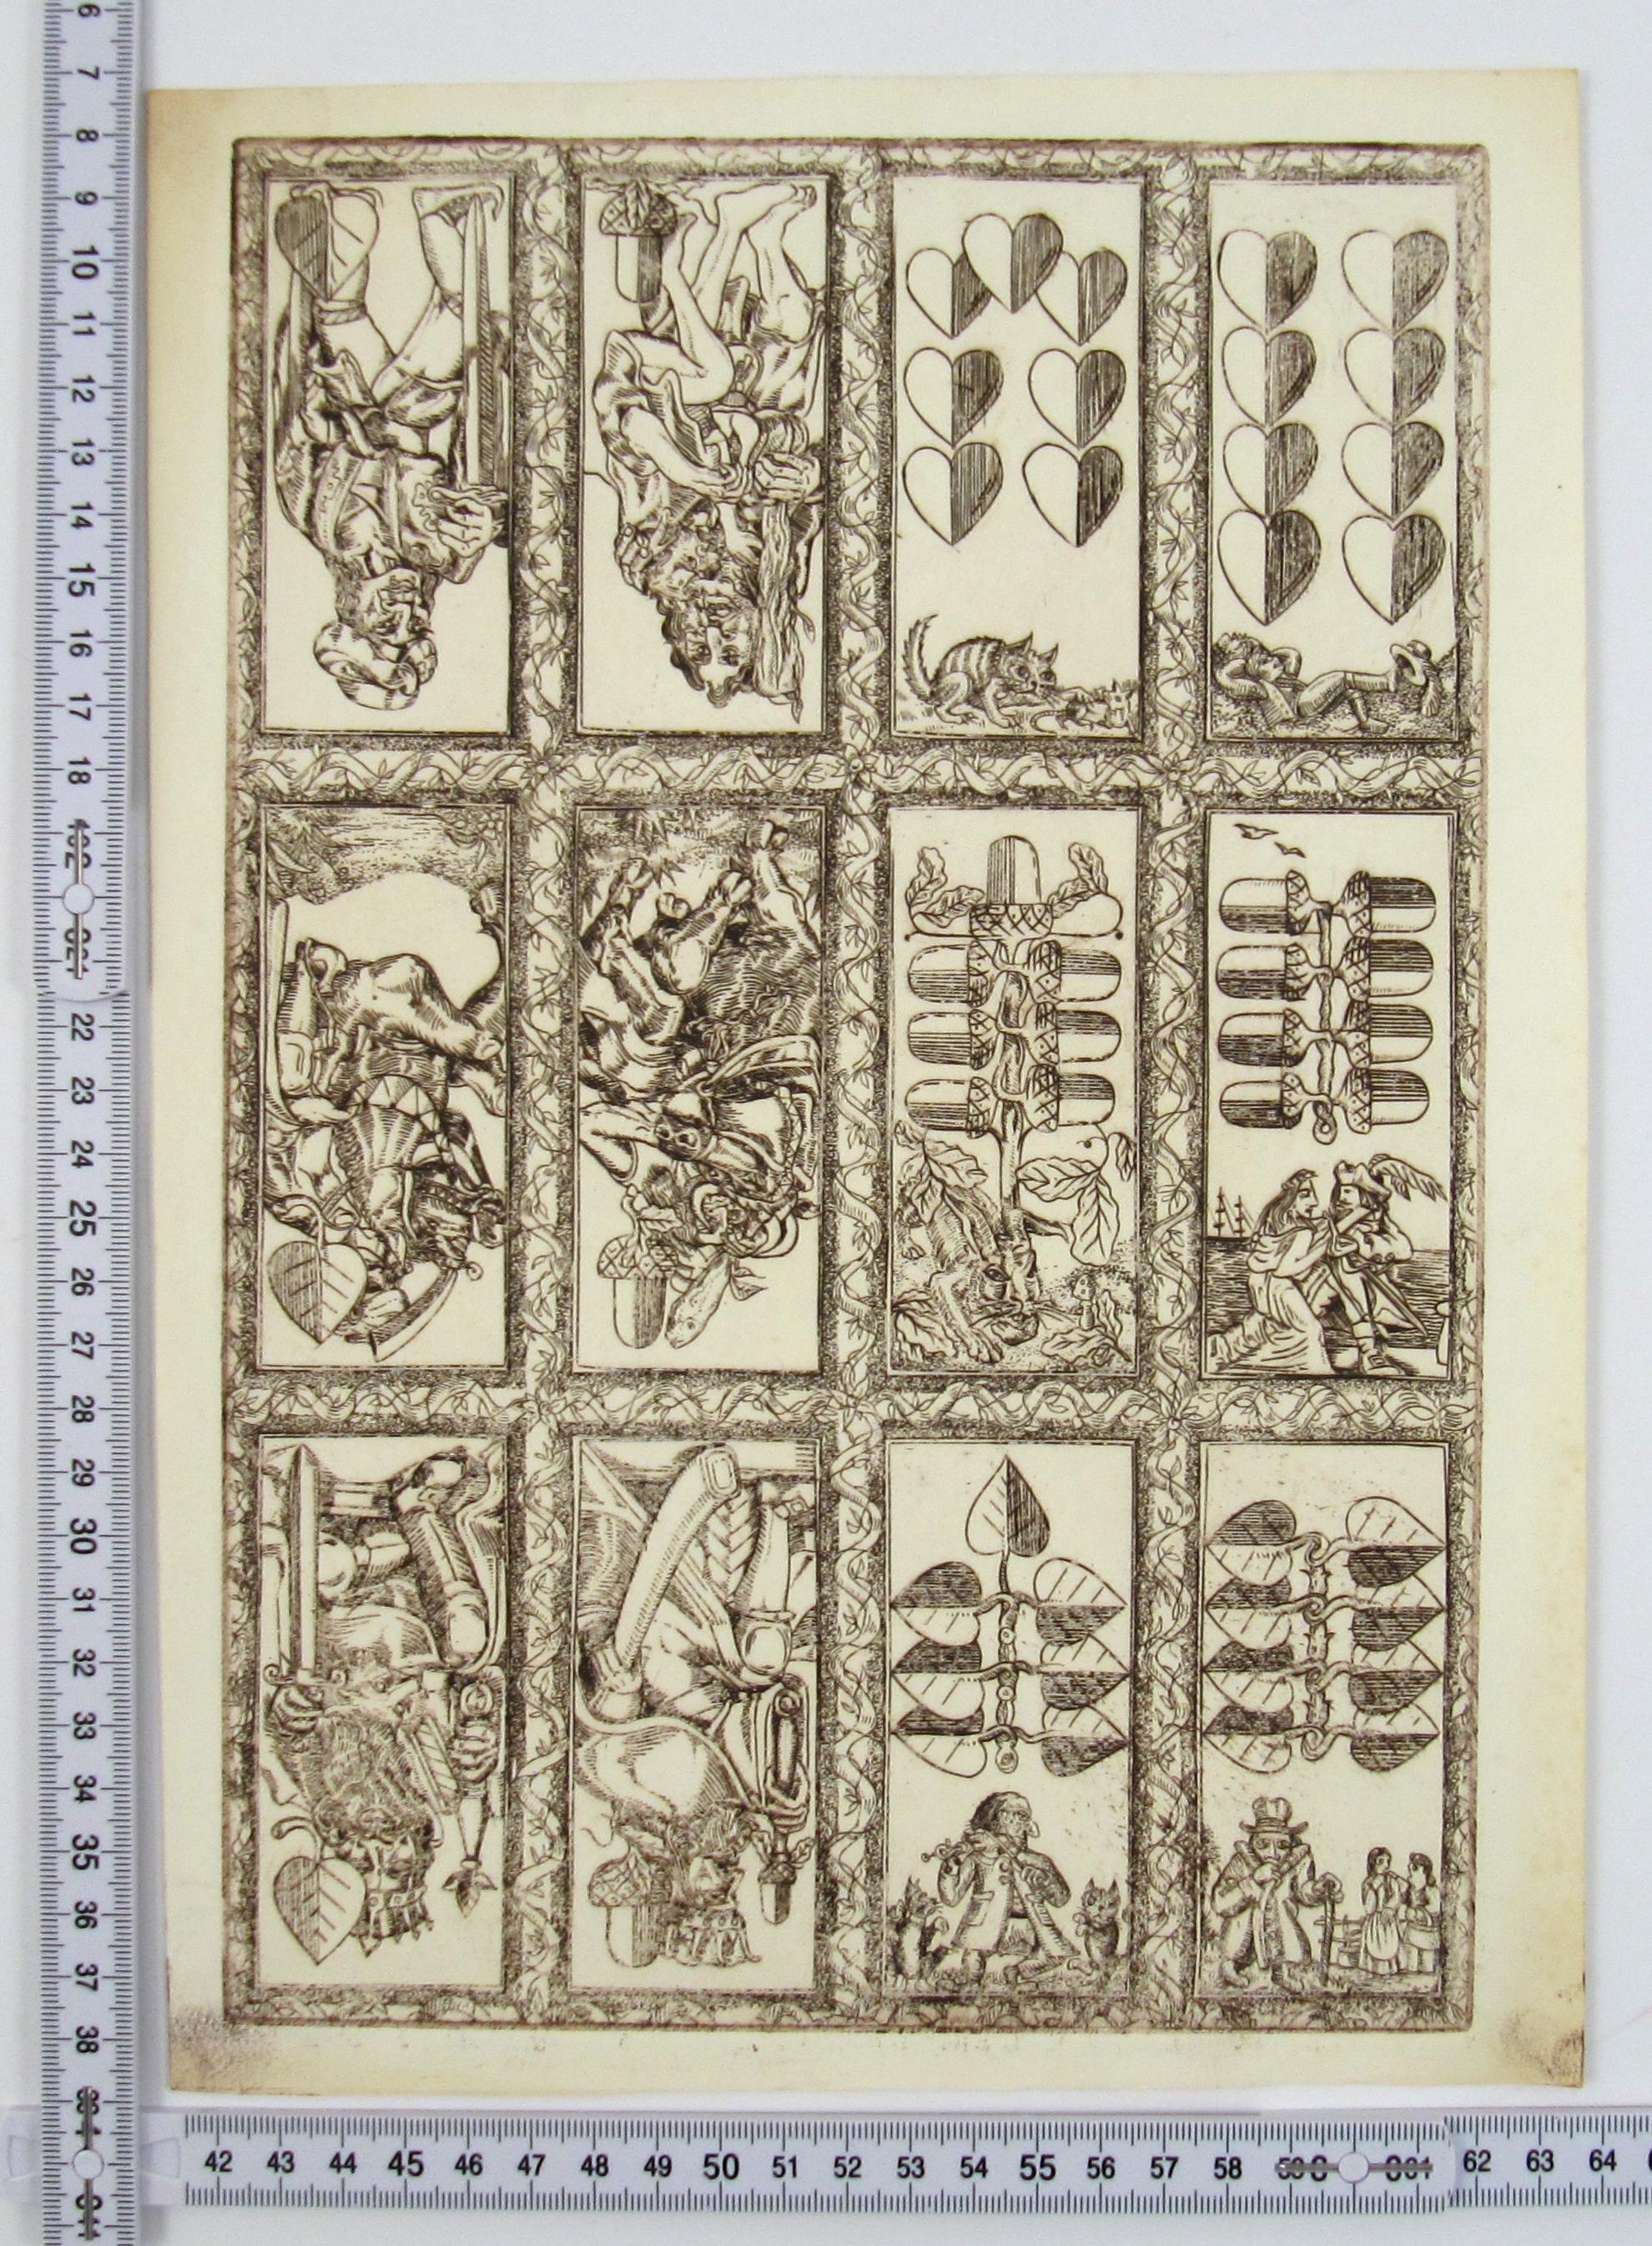 Deutsche Karten No. 9, 1982/90 by Karl Gerich of Bath - Playing Card Print Sheet For Sale 4